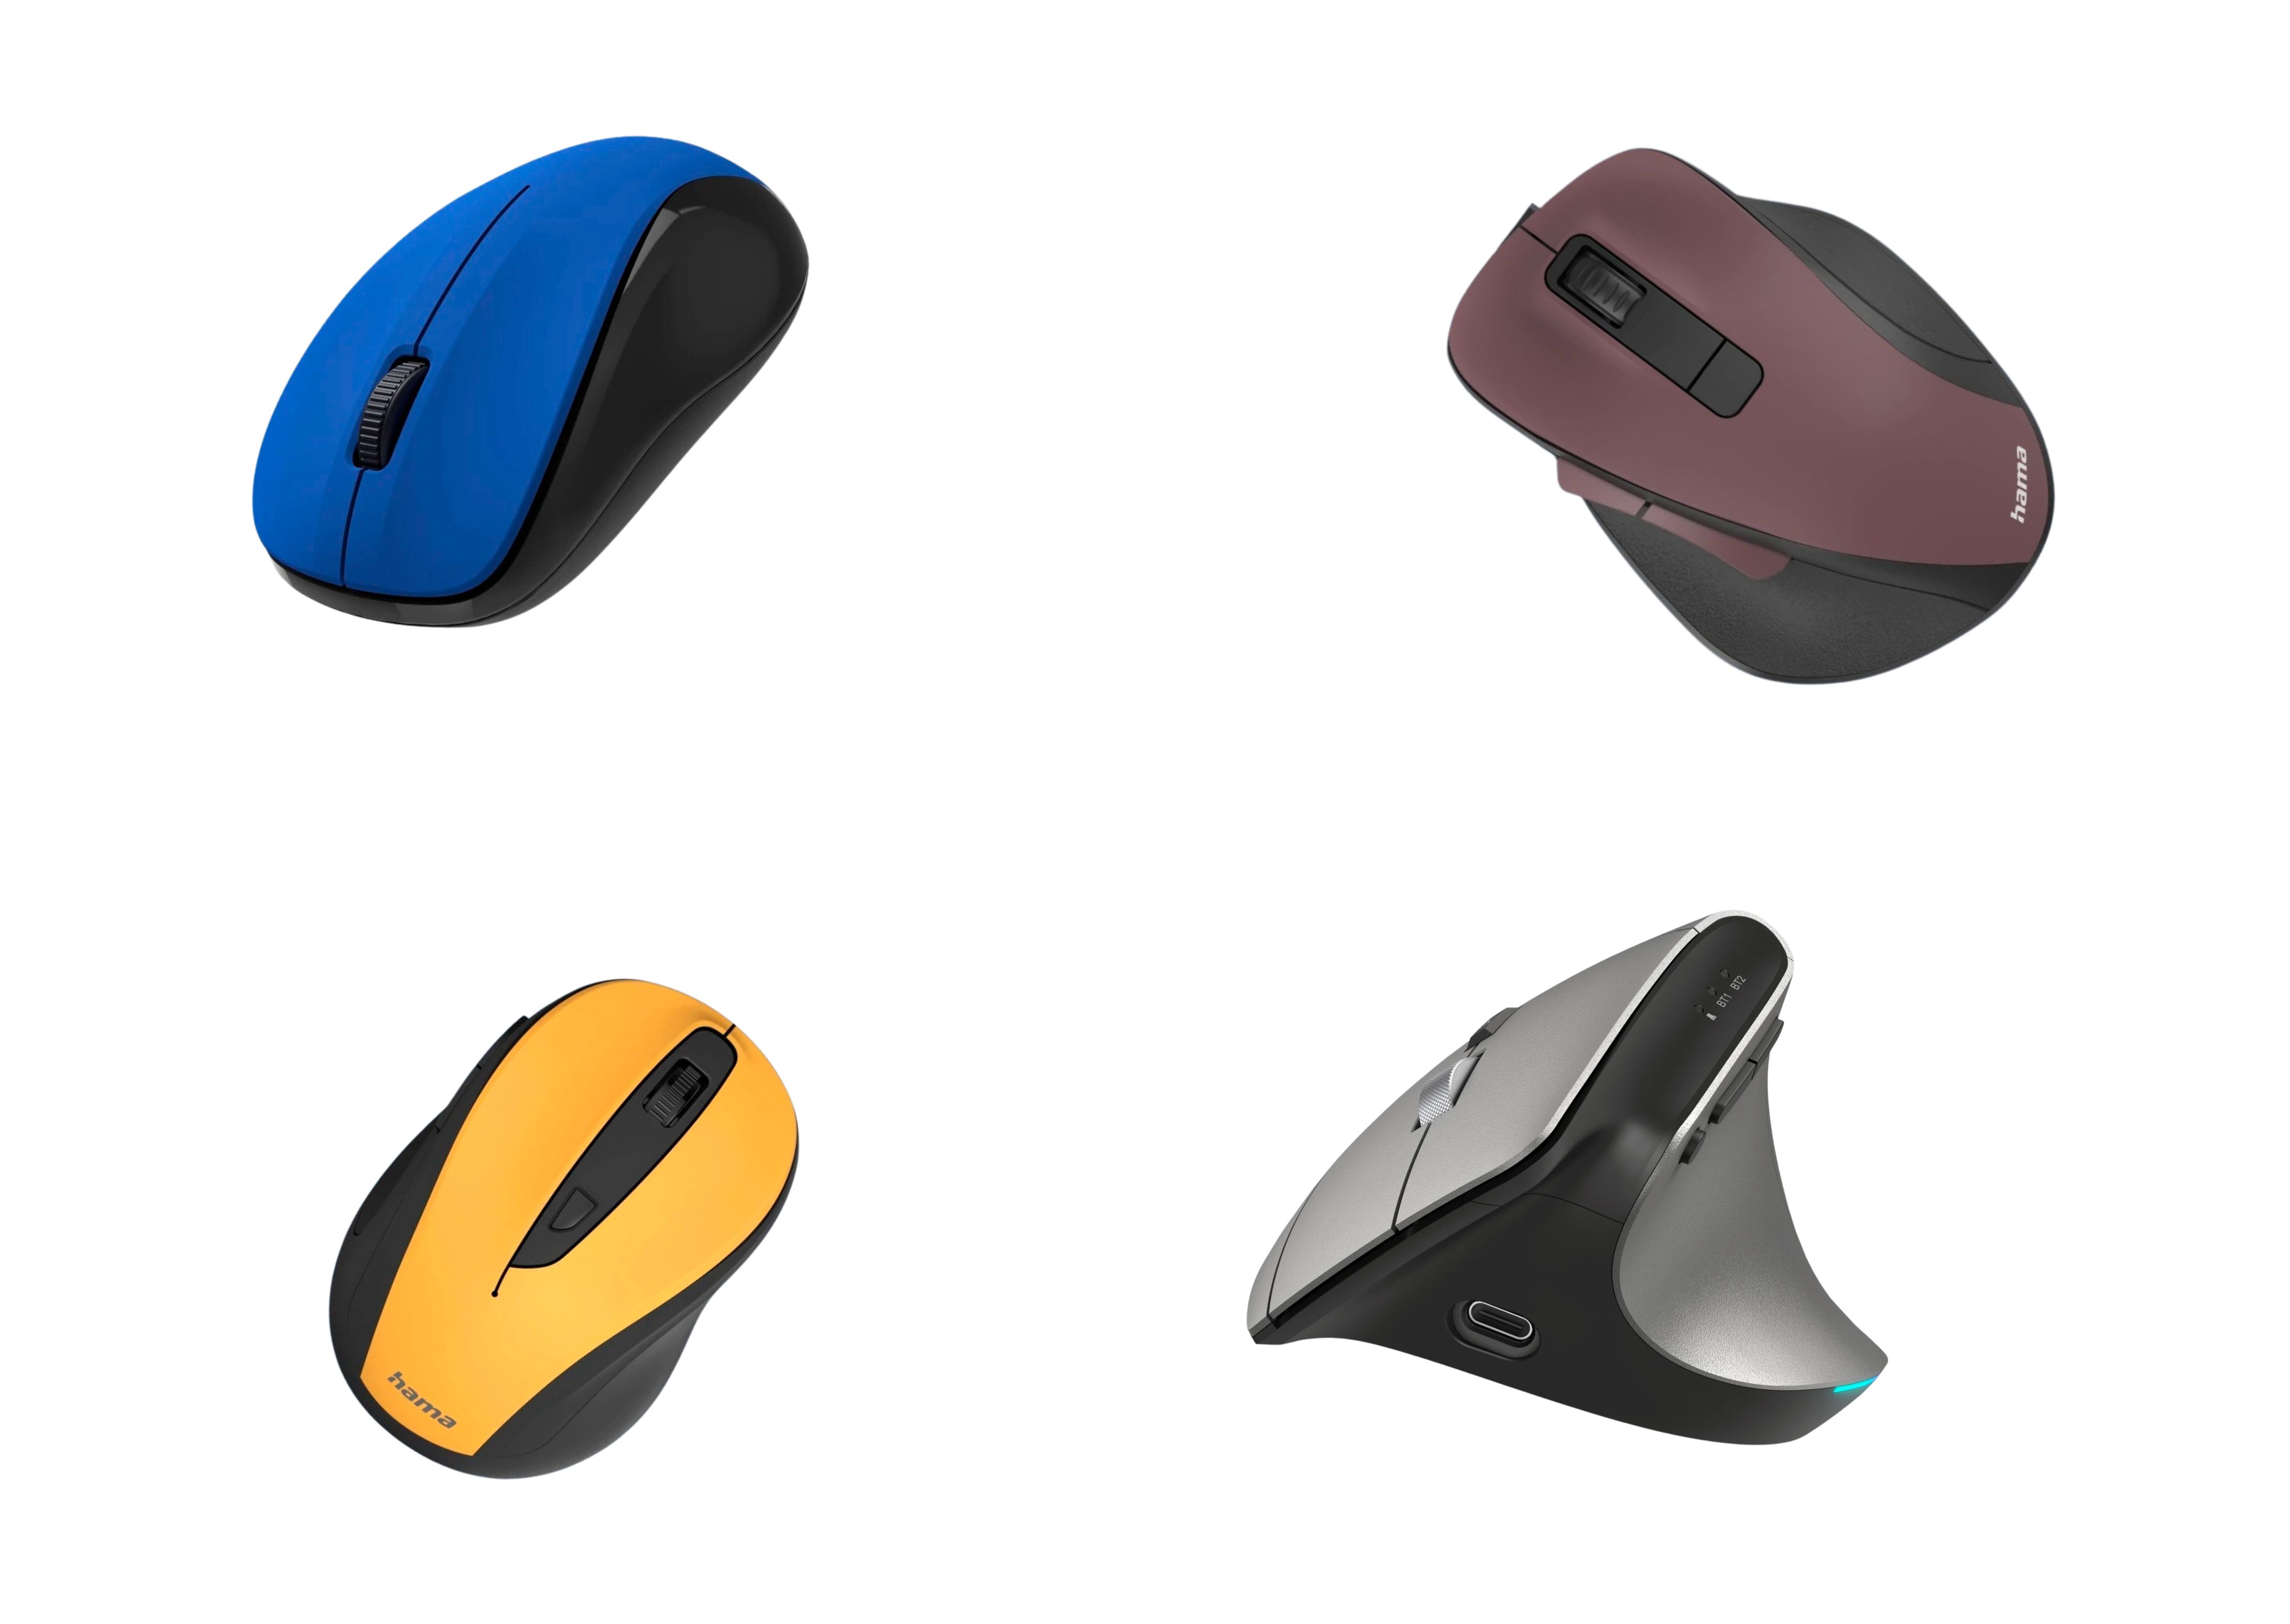 Nowe bezprzewodowe myszki komputerowe od marki Hama. Łączą design, funkcjonalność i ergonomię.jpg